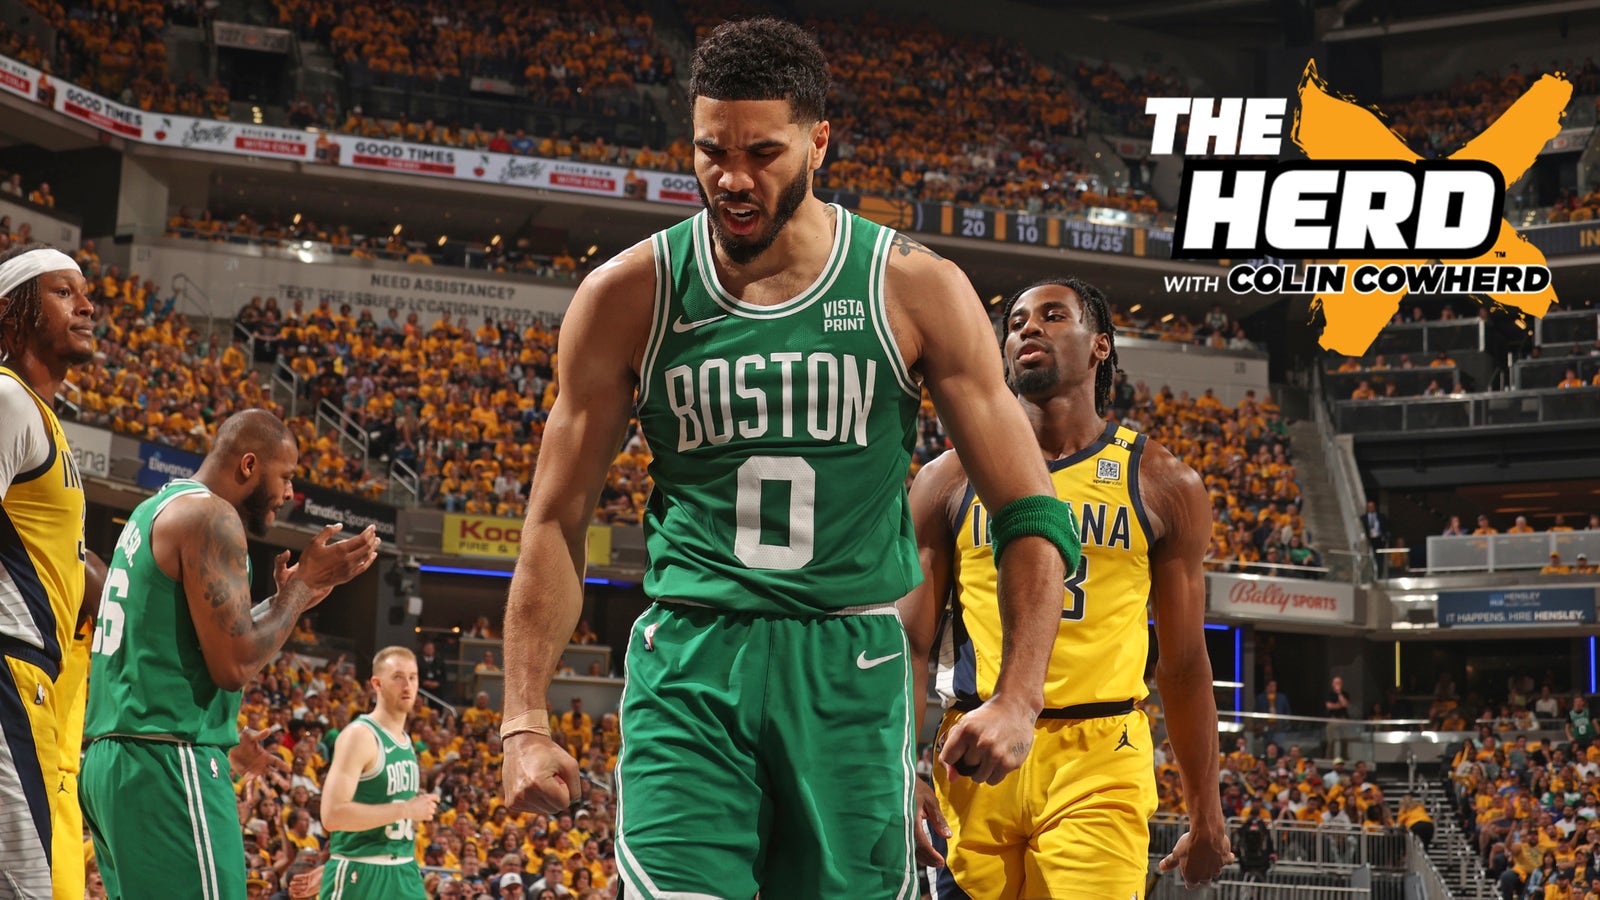 Celtics or Mavericks under more pressure in Game 1?